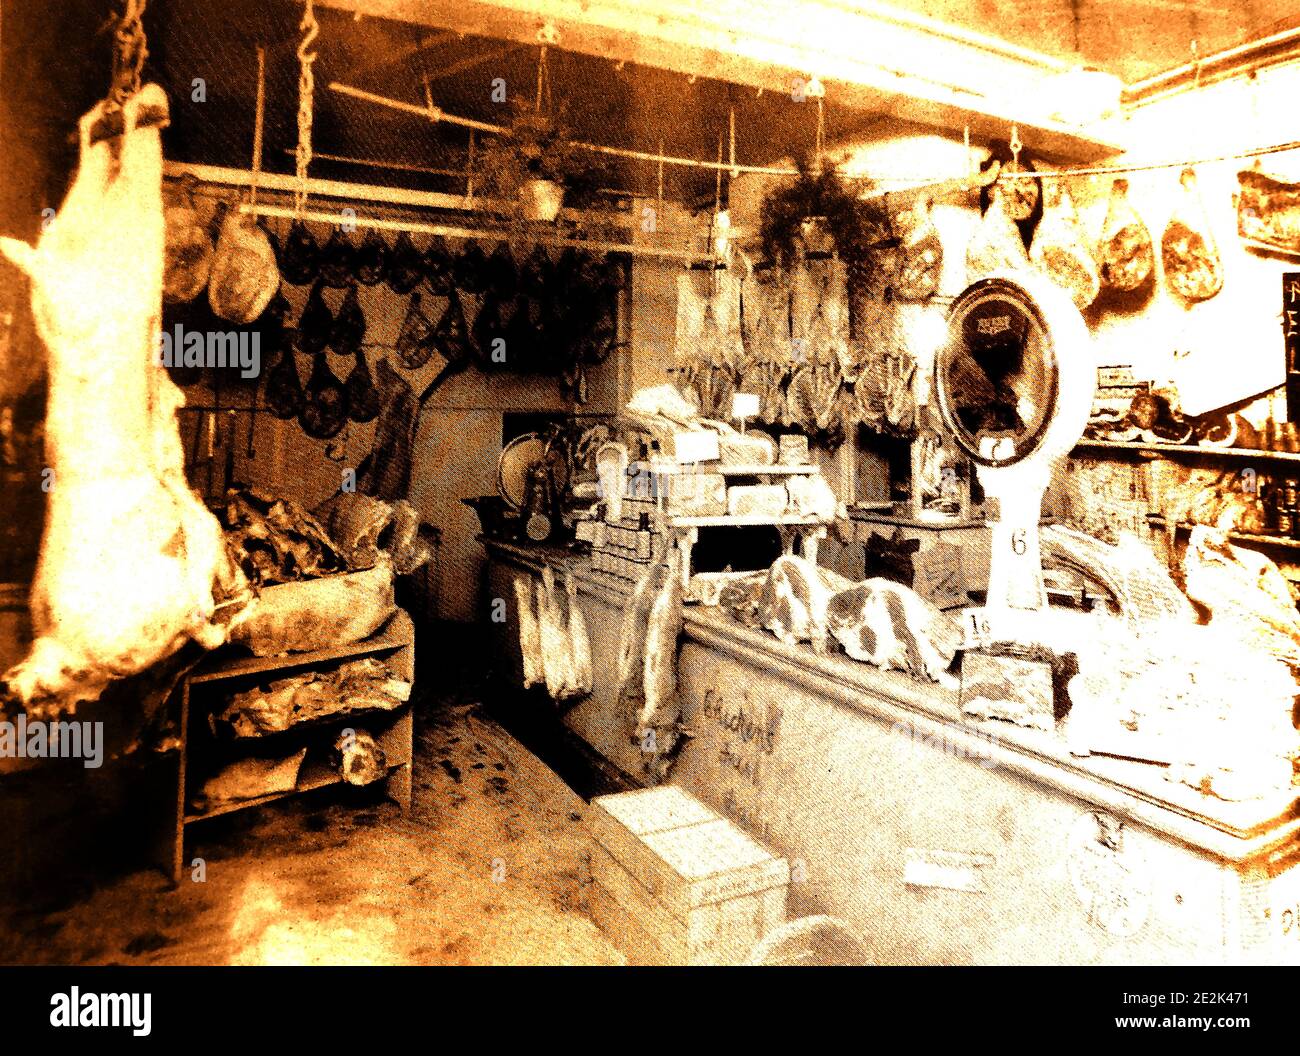 Una prima fotografia dell'interno di un negozio di macellerie tradizionale a Whitby, nel Nord Yorkshire, Inghilterra. Le carni e le carcasse tagliate sono esposte all'aperto, come è prassi generale. Una vecchia scala di carne può essere visto sul banco. Foto Stock